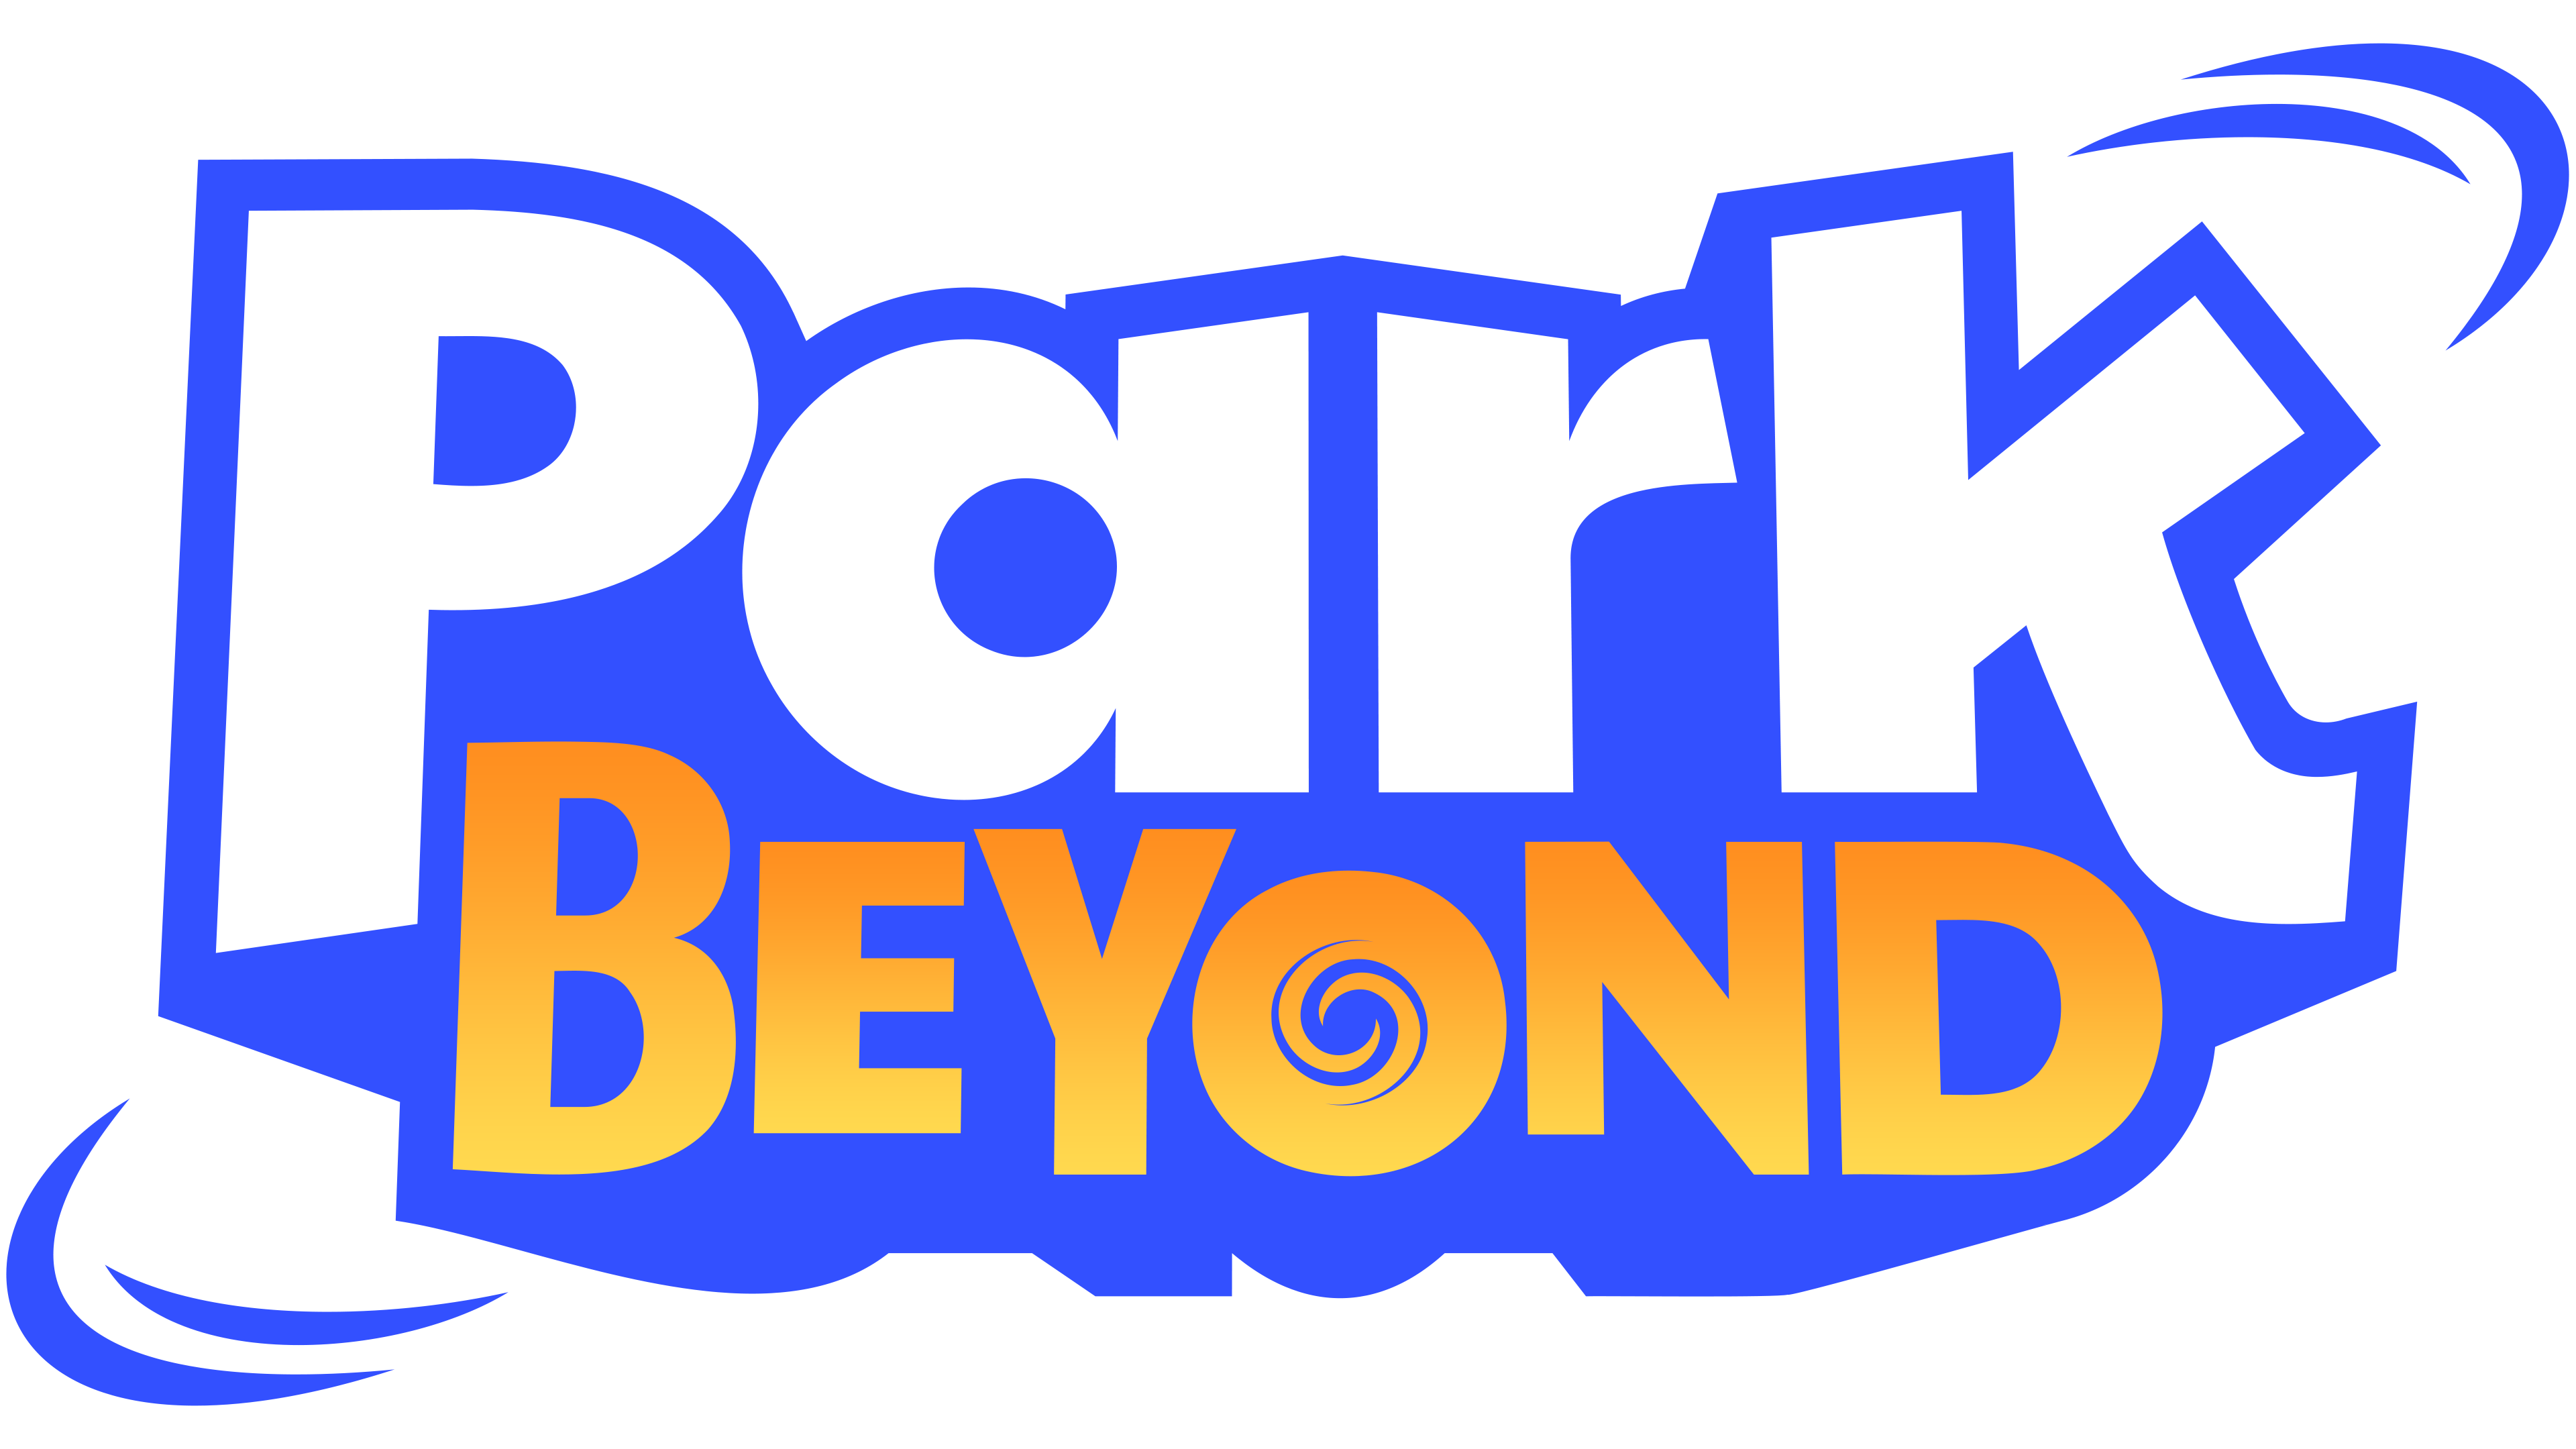 Park Beyond Logo